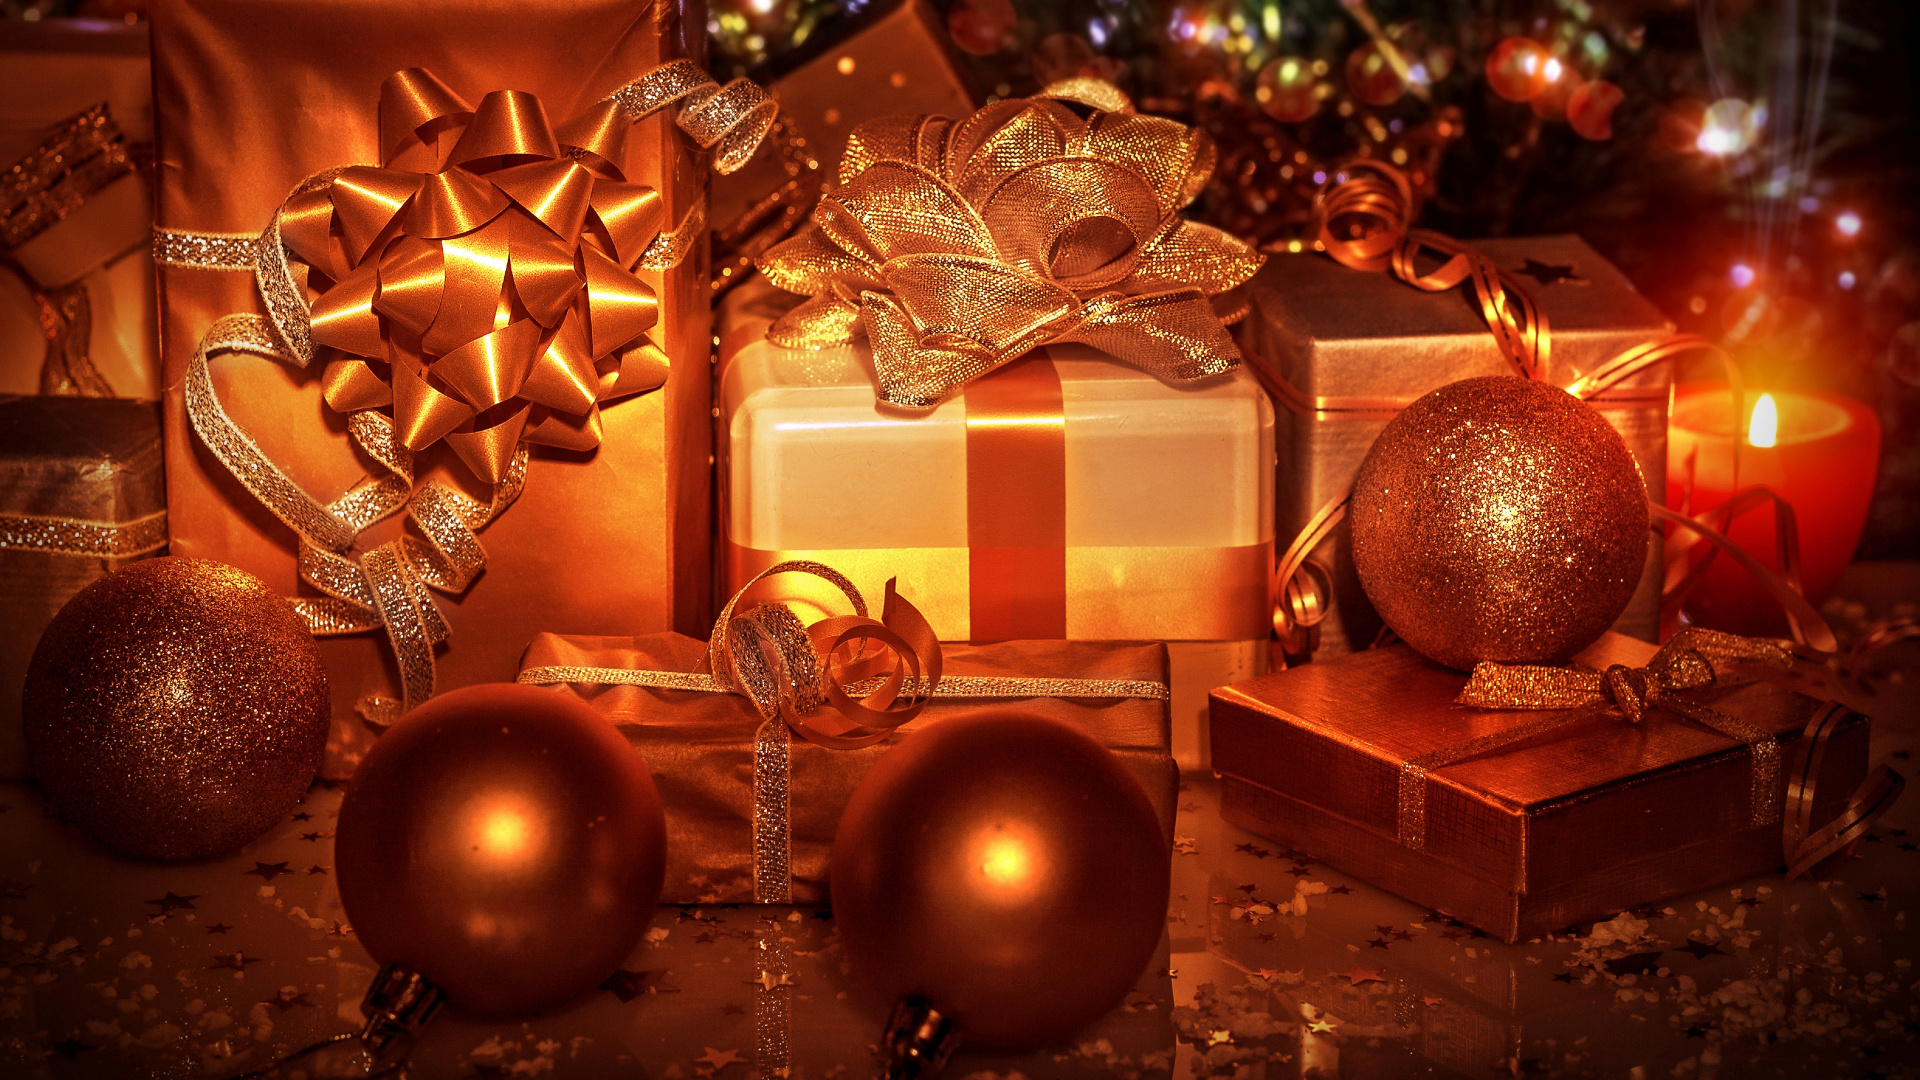 圣诞节那天, 圣诞节的装饰品, 圣诞树, 新的一年, 圣诞装饰 壁纸 1920x1080 允许